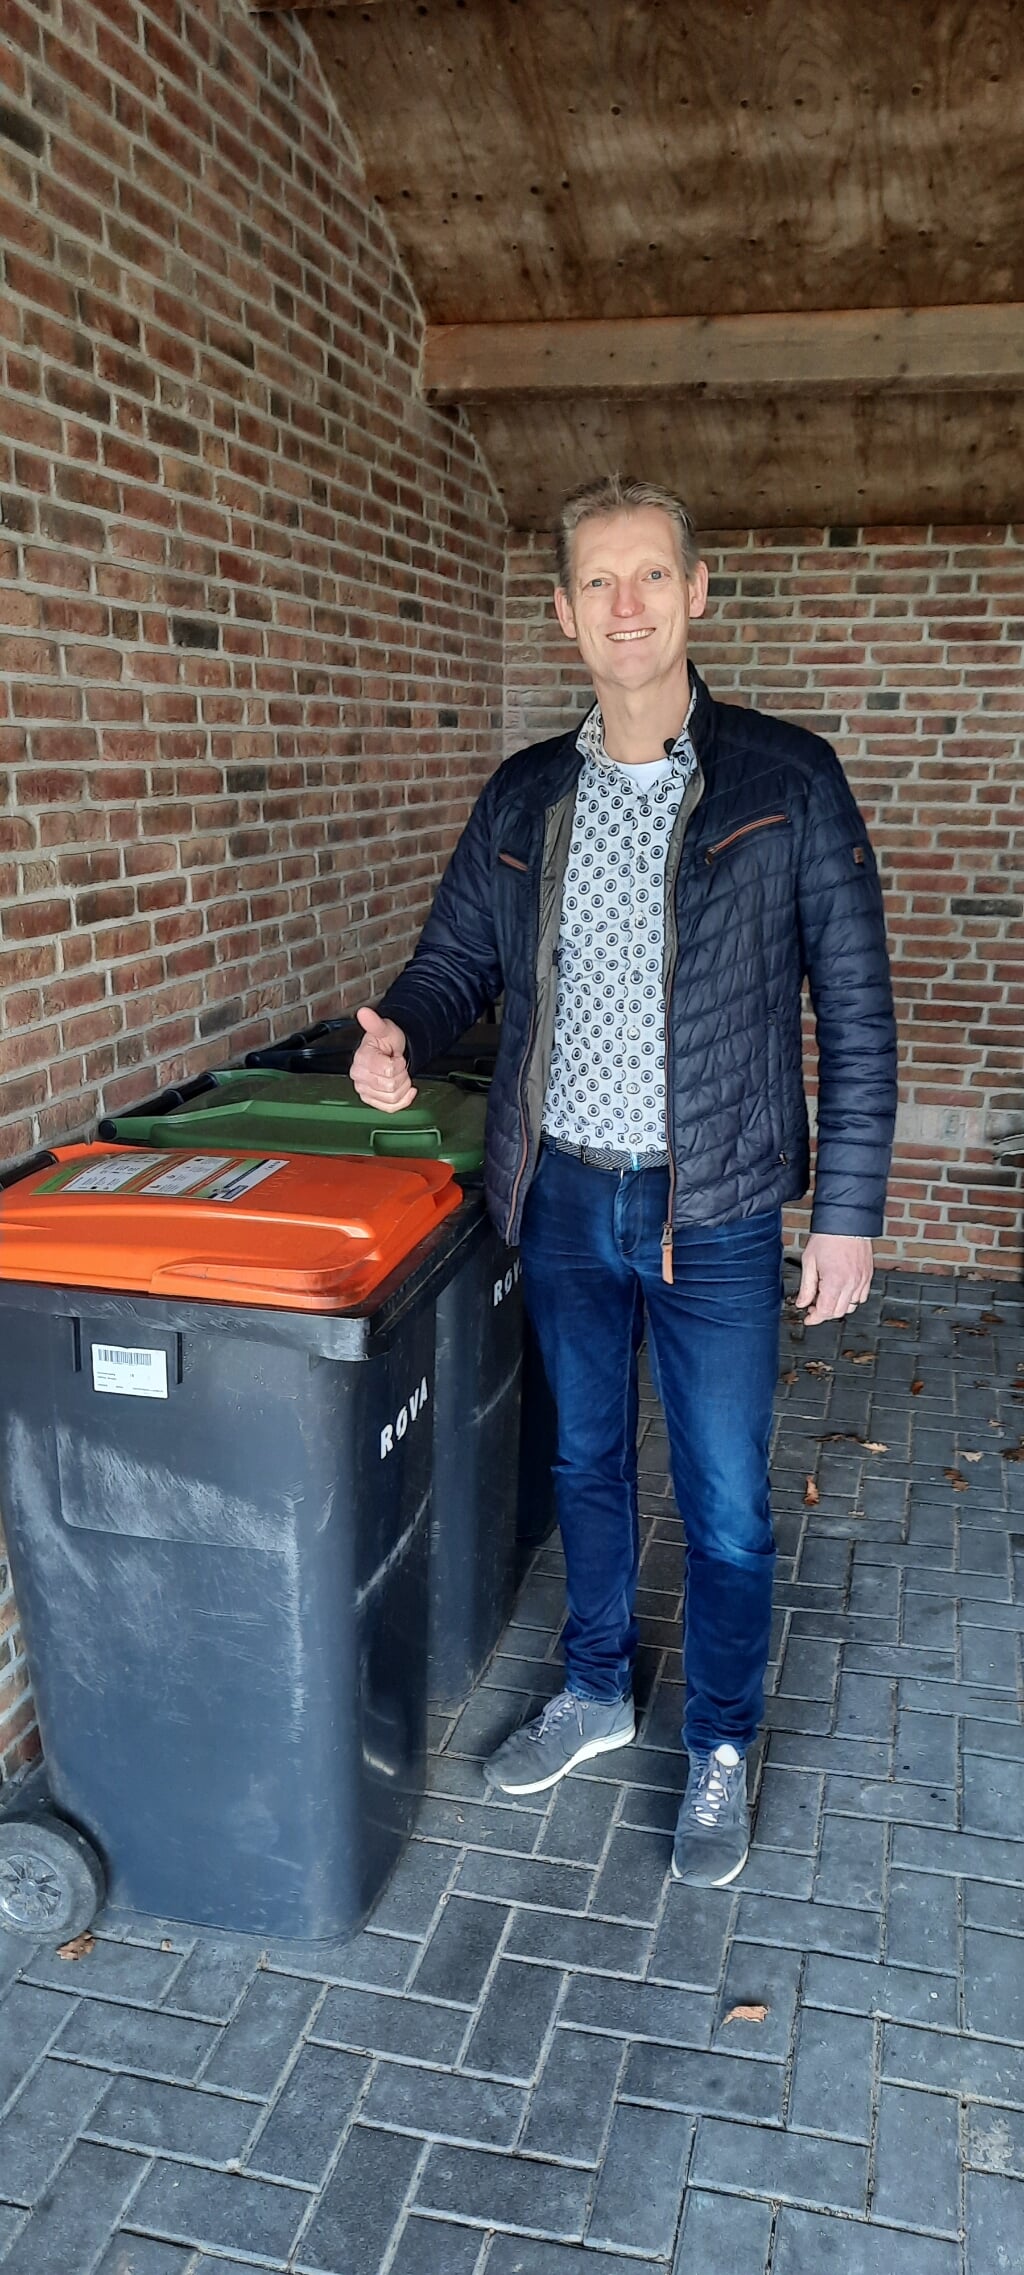 Wethouder Erik Volmerink plakt zelf een sticker op zijn afvalcontainer, die net buiten beeld staat in deze verticale foto.